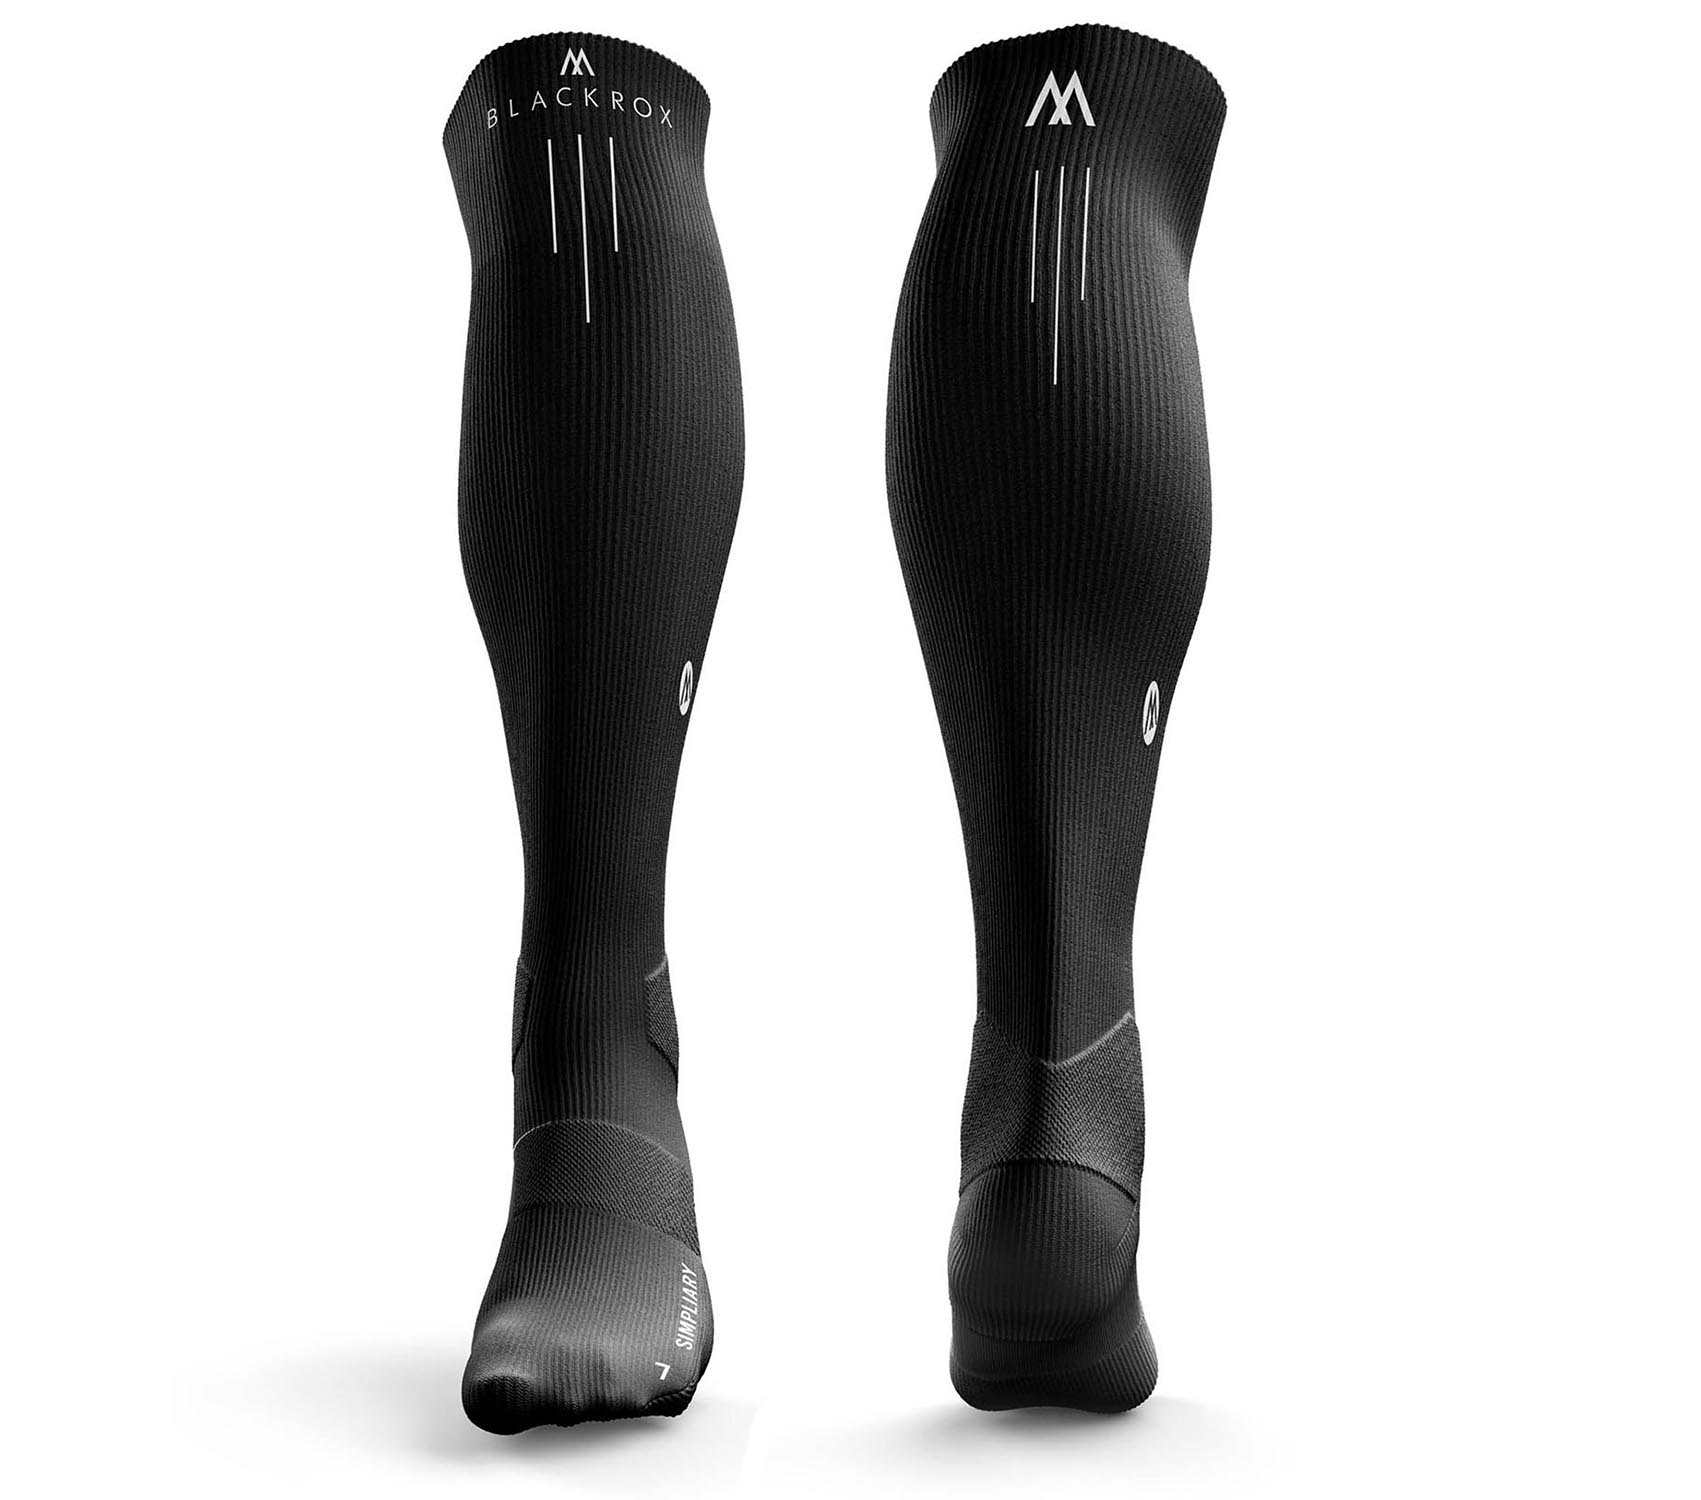 Chaussettes de compression sport BLACKROX « SIMPLIARY » chaussettes de compression